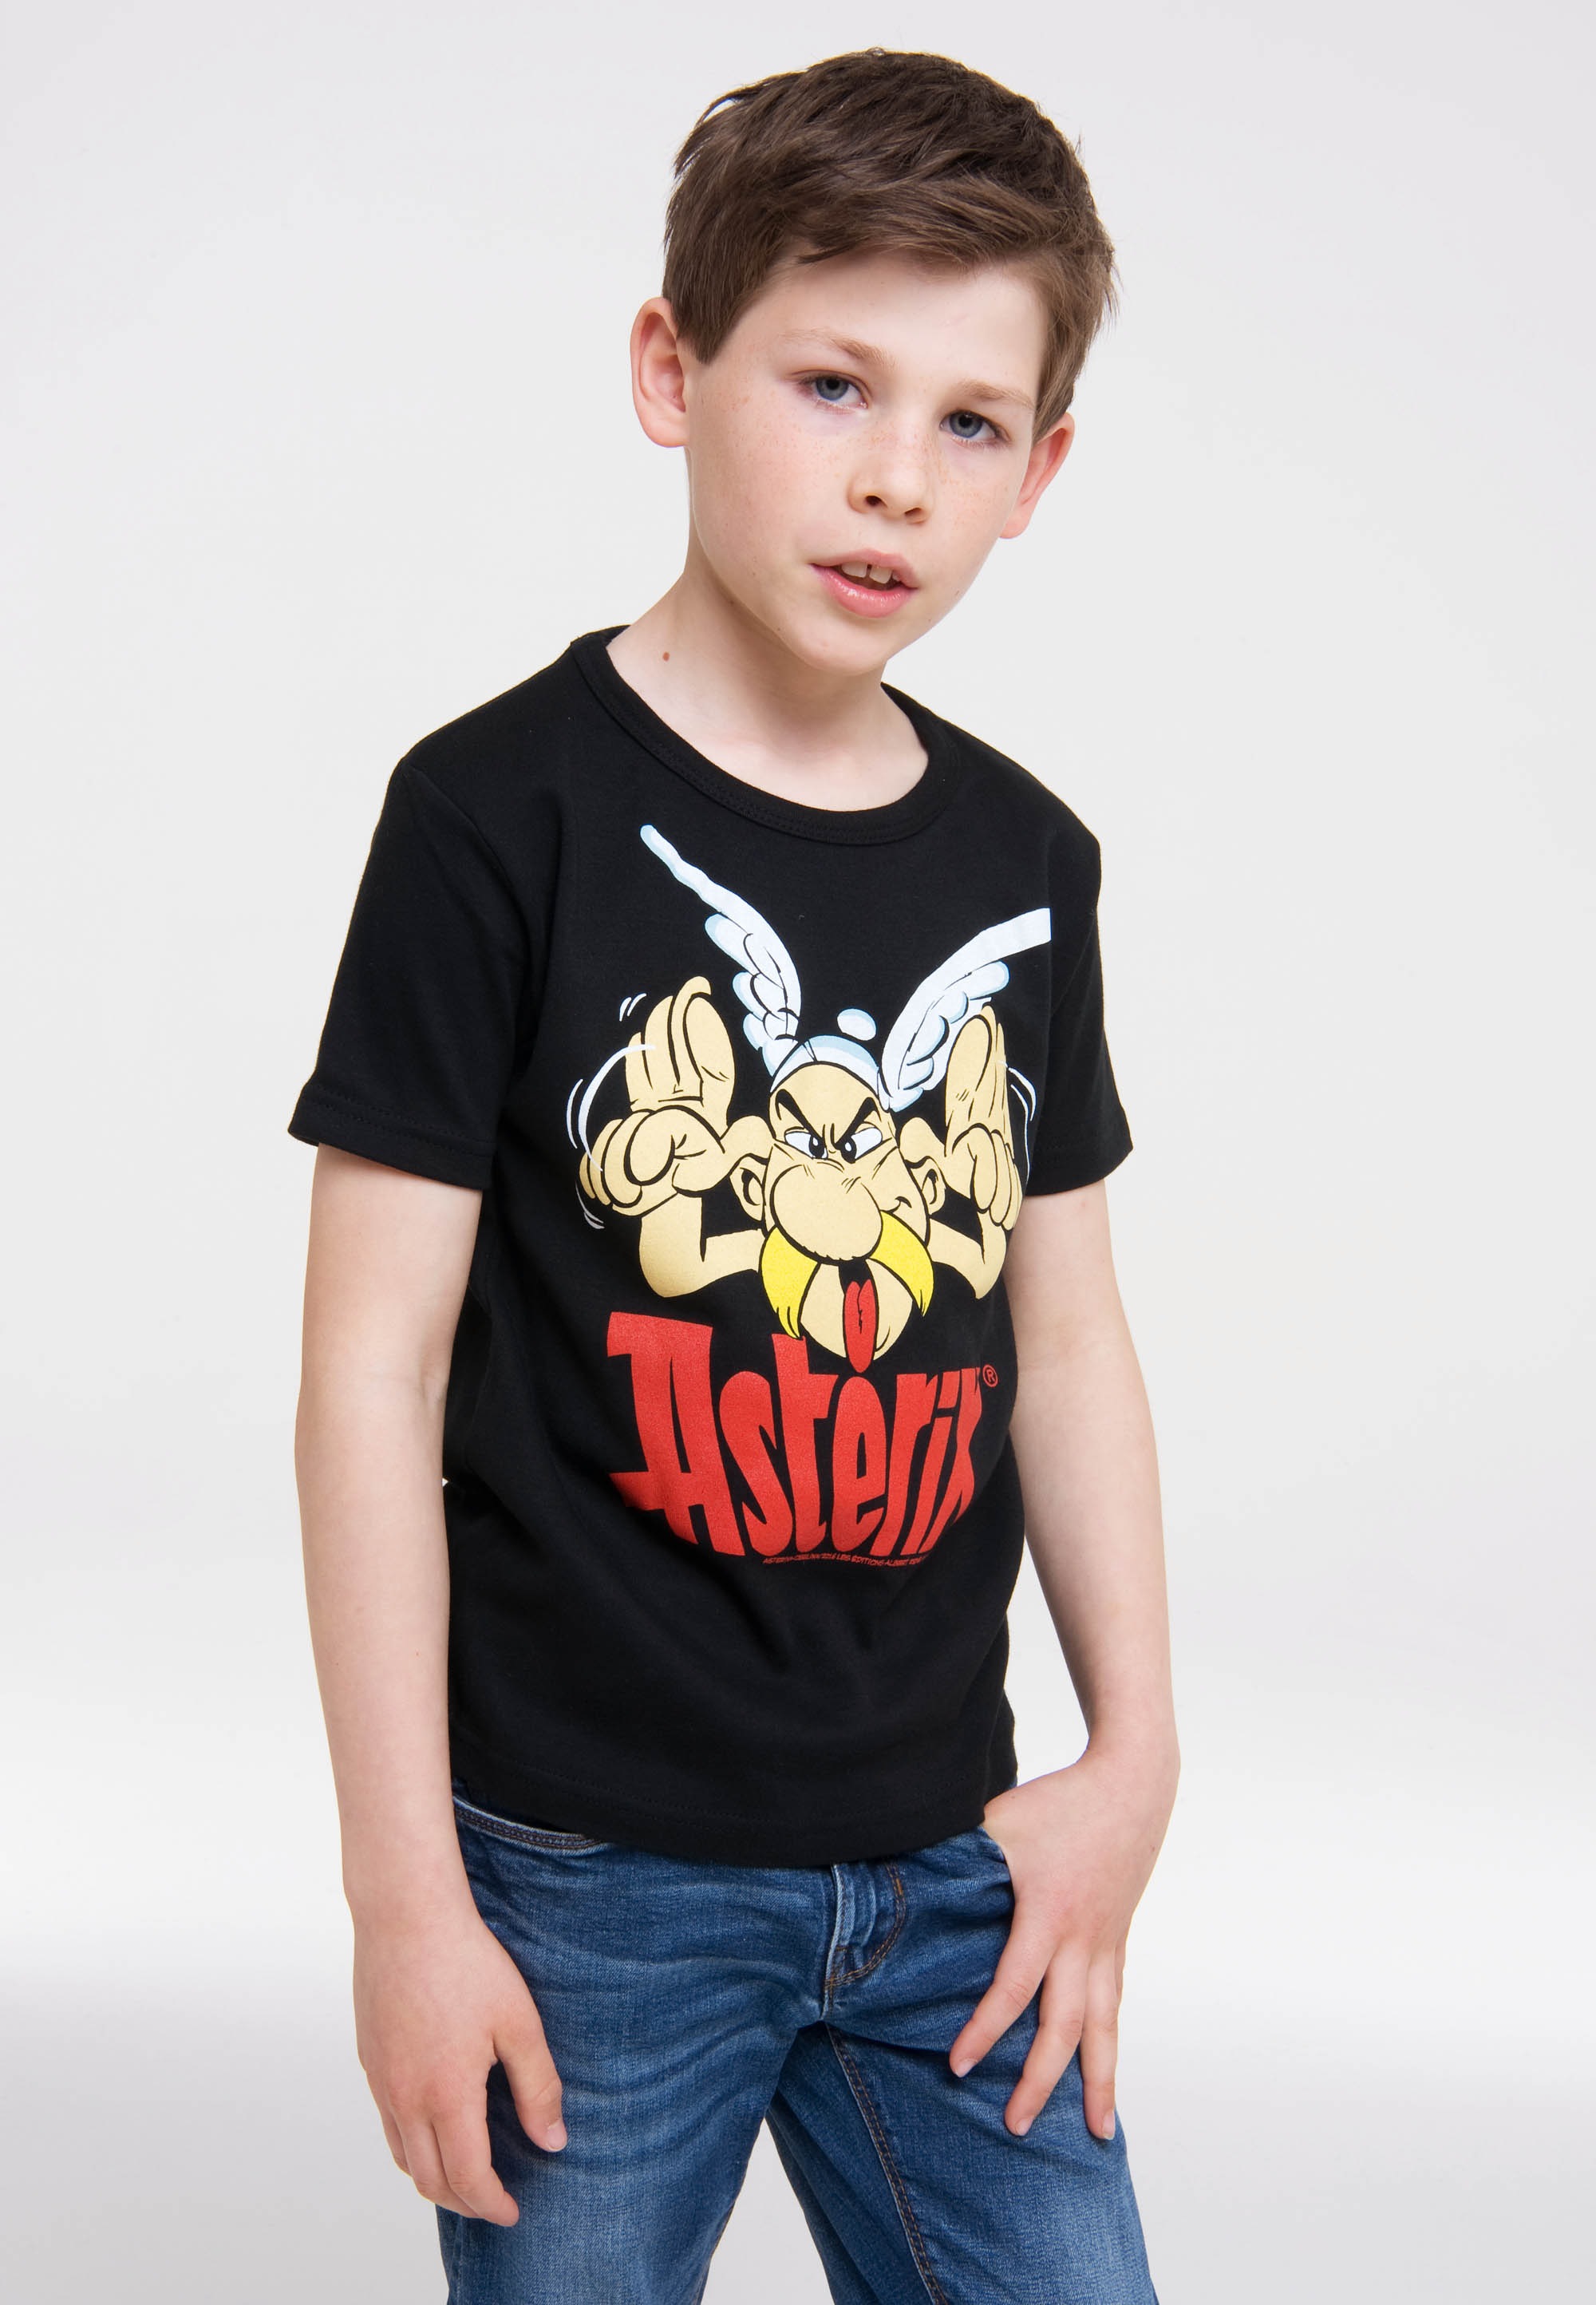 LOGOSHIRT T-Shirt »Asterix - Grimasse«, mit Asterix-Frontprint kaufen | BAUR